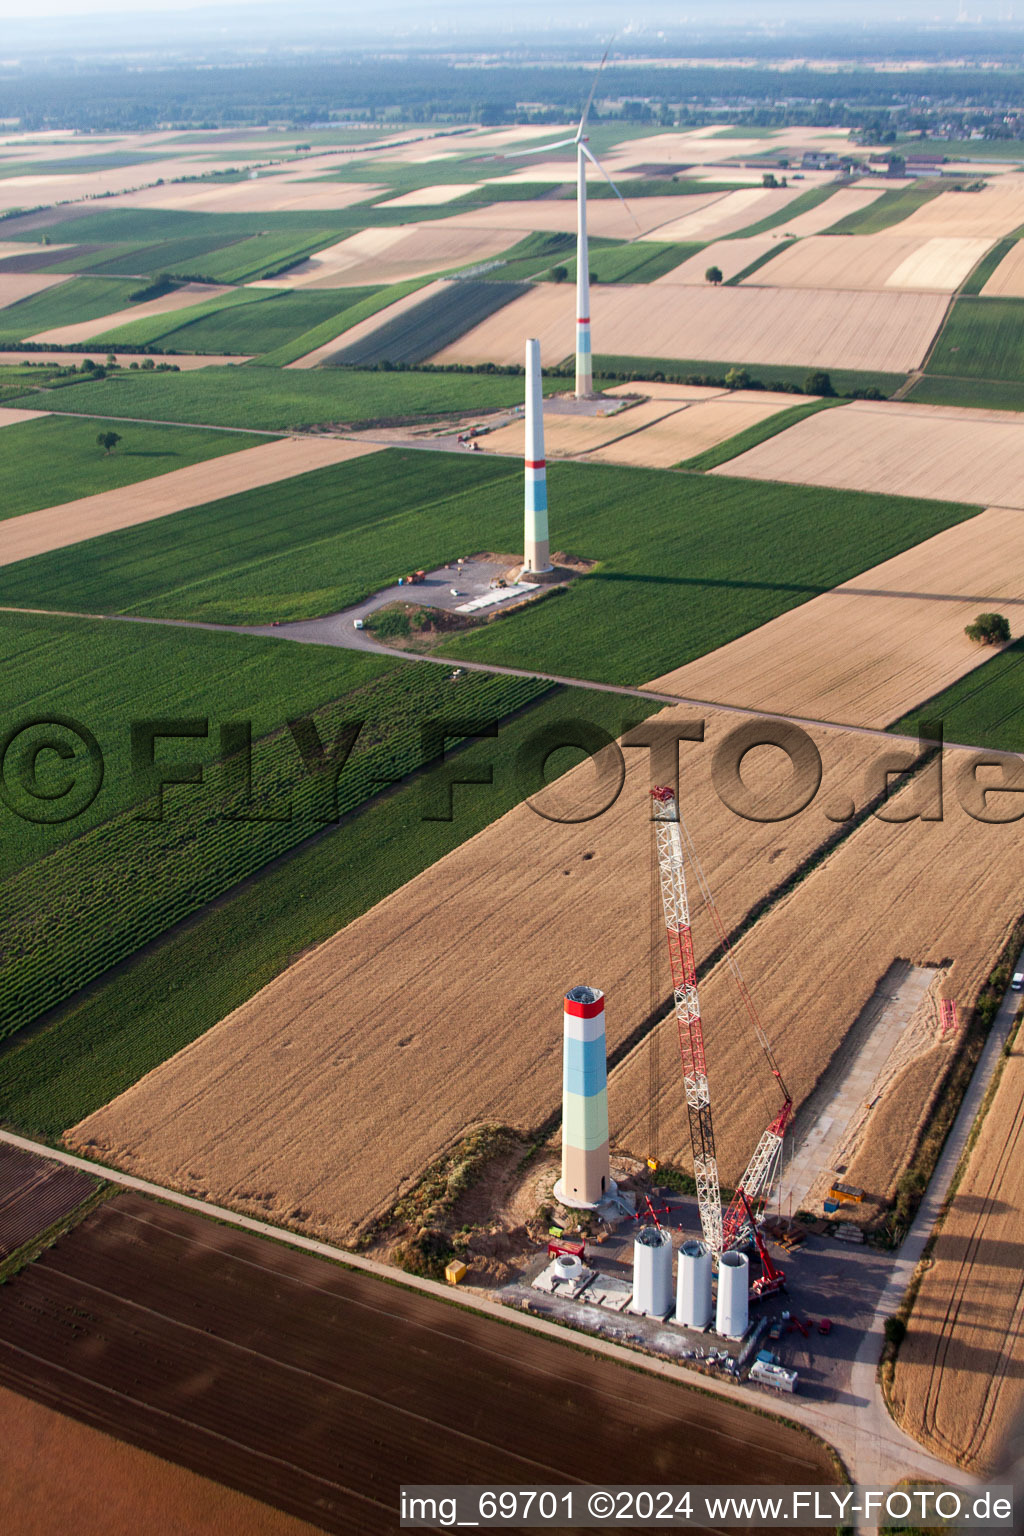 Windparkbau in Offenbach an der Queich im Bundesland Rheinland-Pfalz, Deutschland von einer Drohne aus